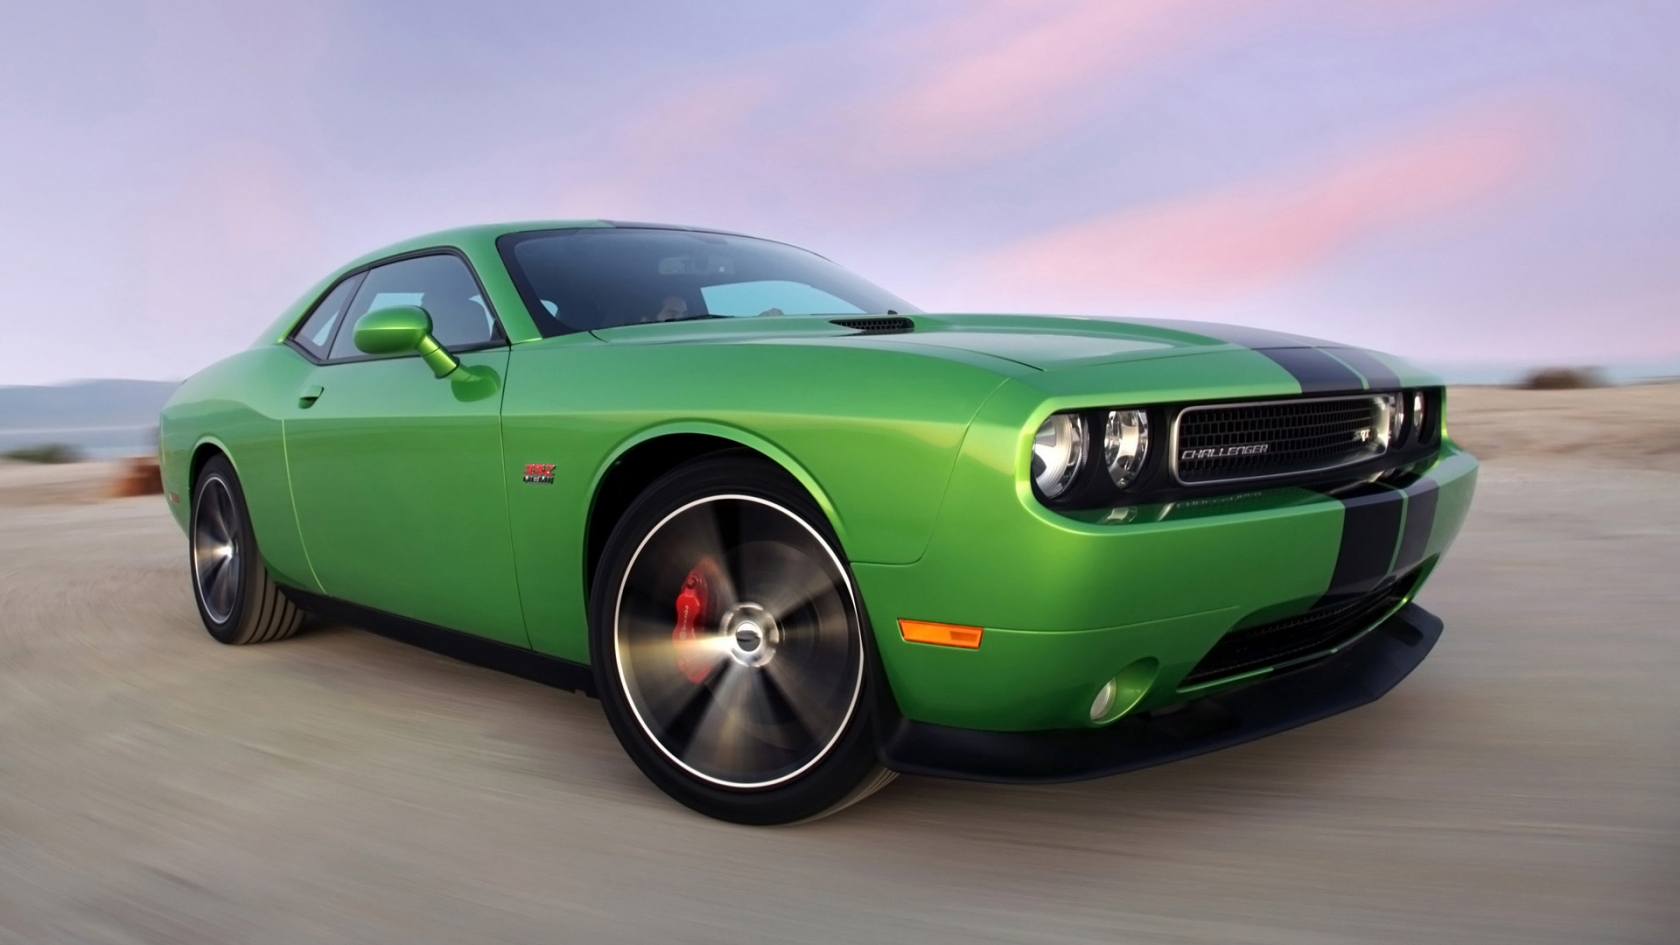 2011 Dodge Challenger Green for 1680 x 945 HDTV resolution